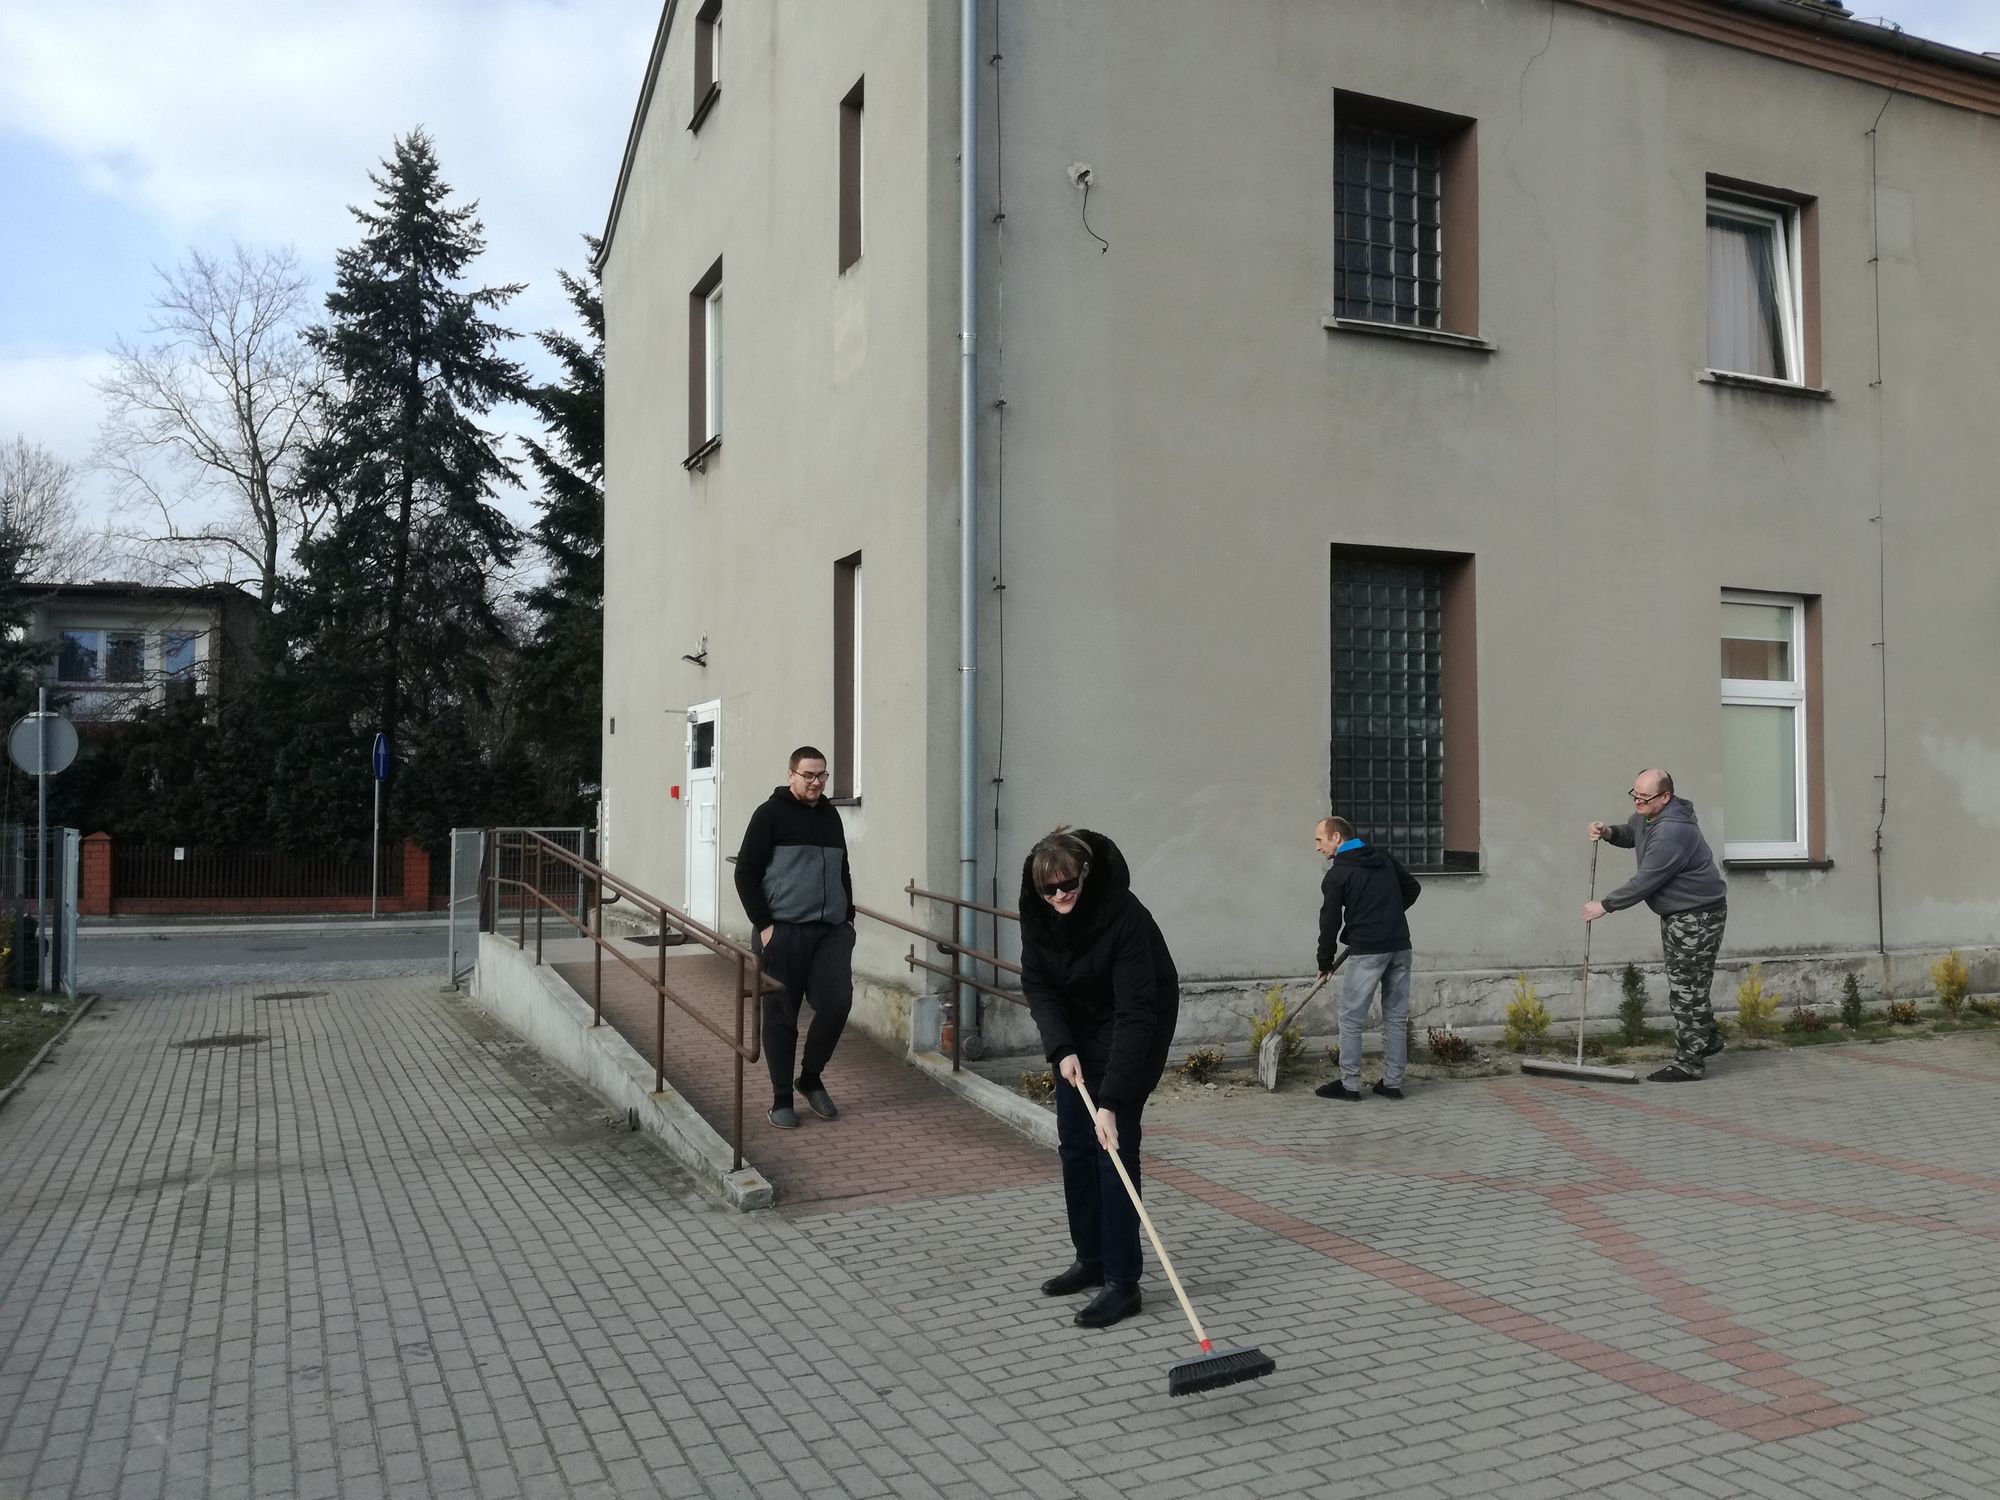 Trzej mieszkańcy mieszkań wspomaganych podczas prac porządkowych wokół budynku (zamiatają), jeden mieszkaniec schodzi z podjzdu do wózków inwalidzkich